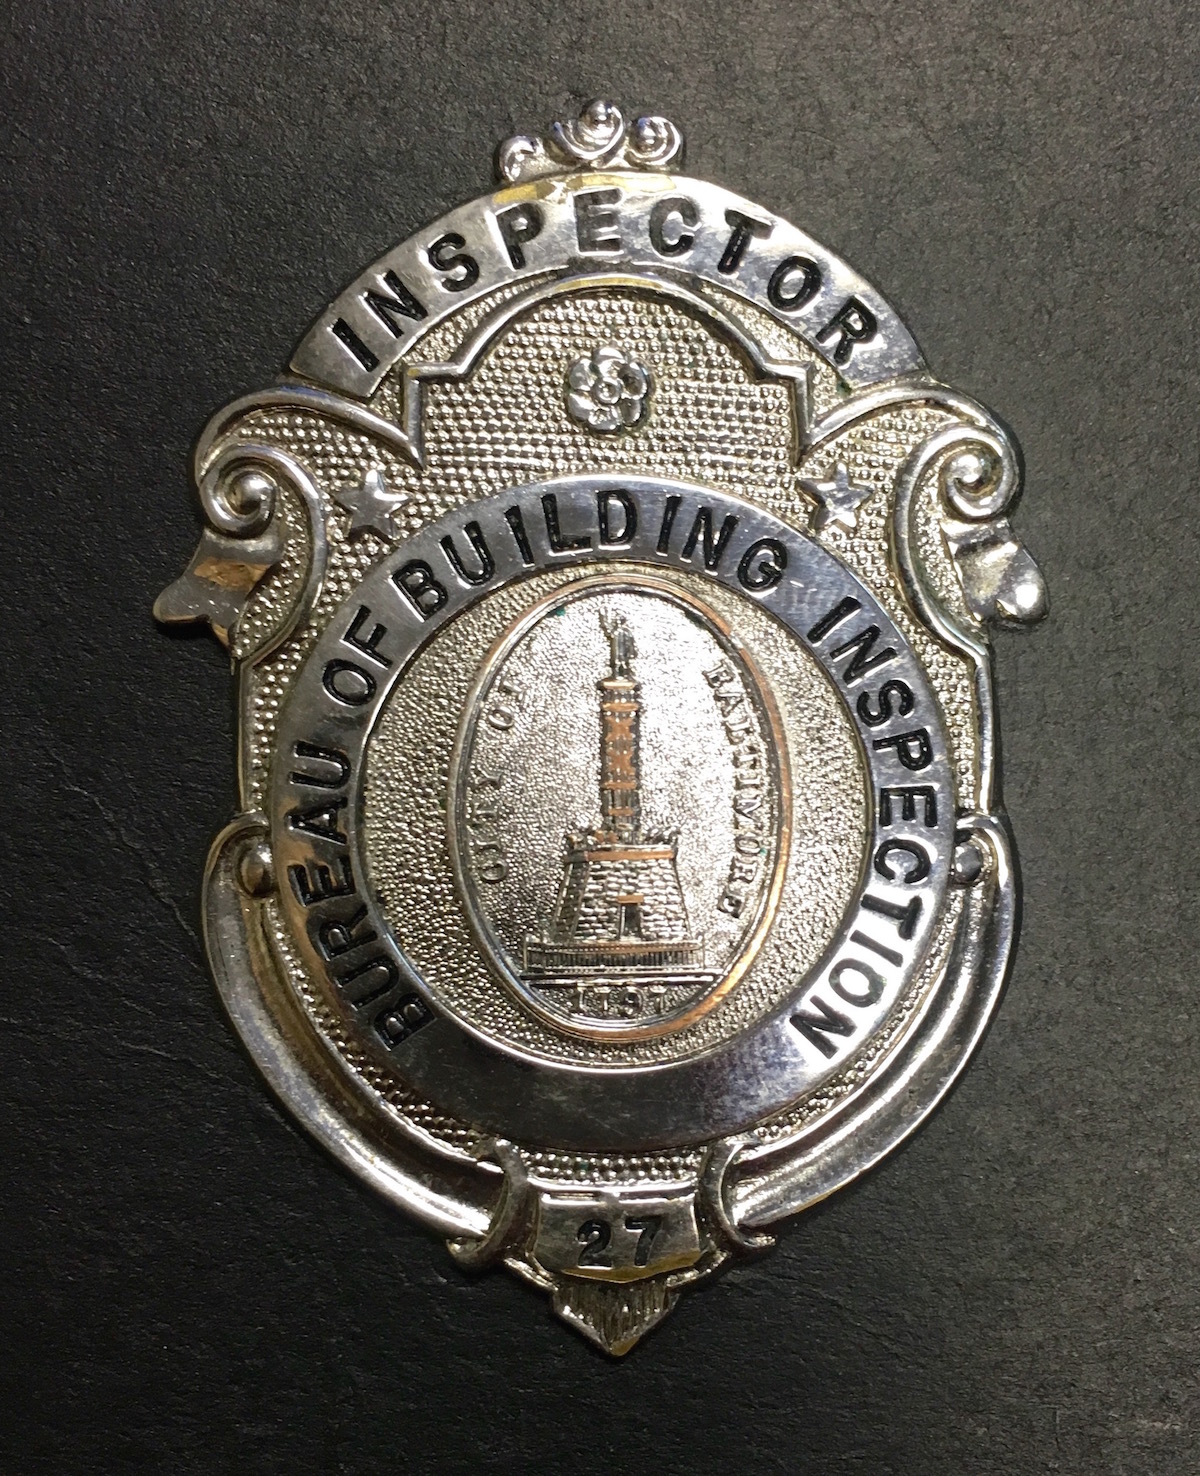 Inspector badge